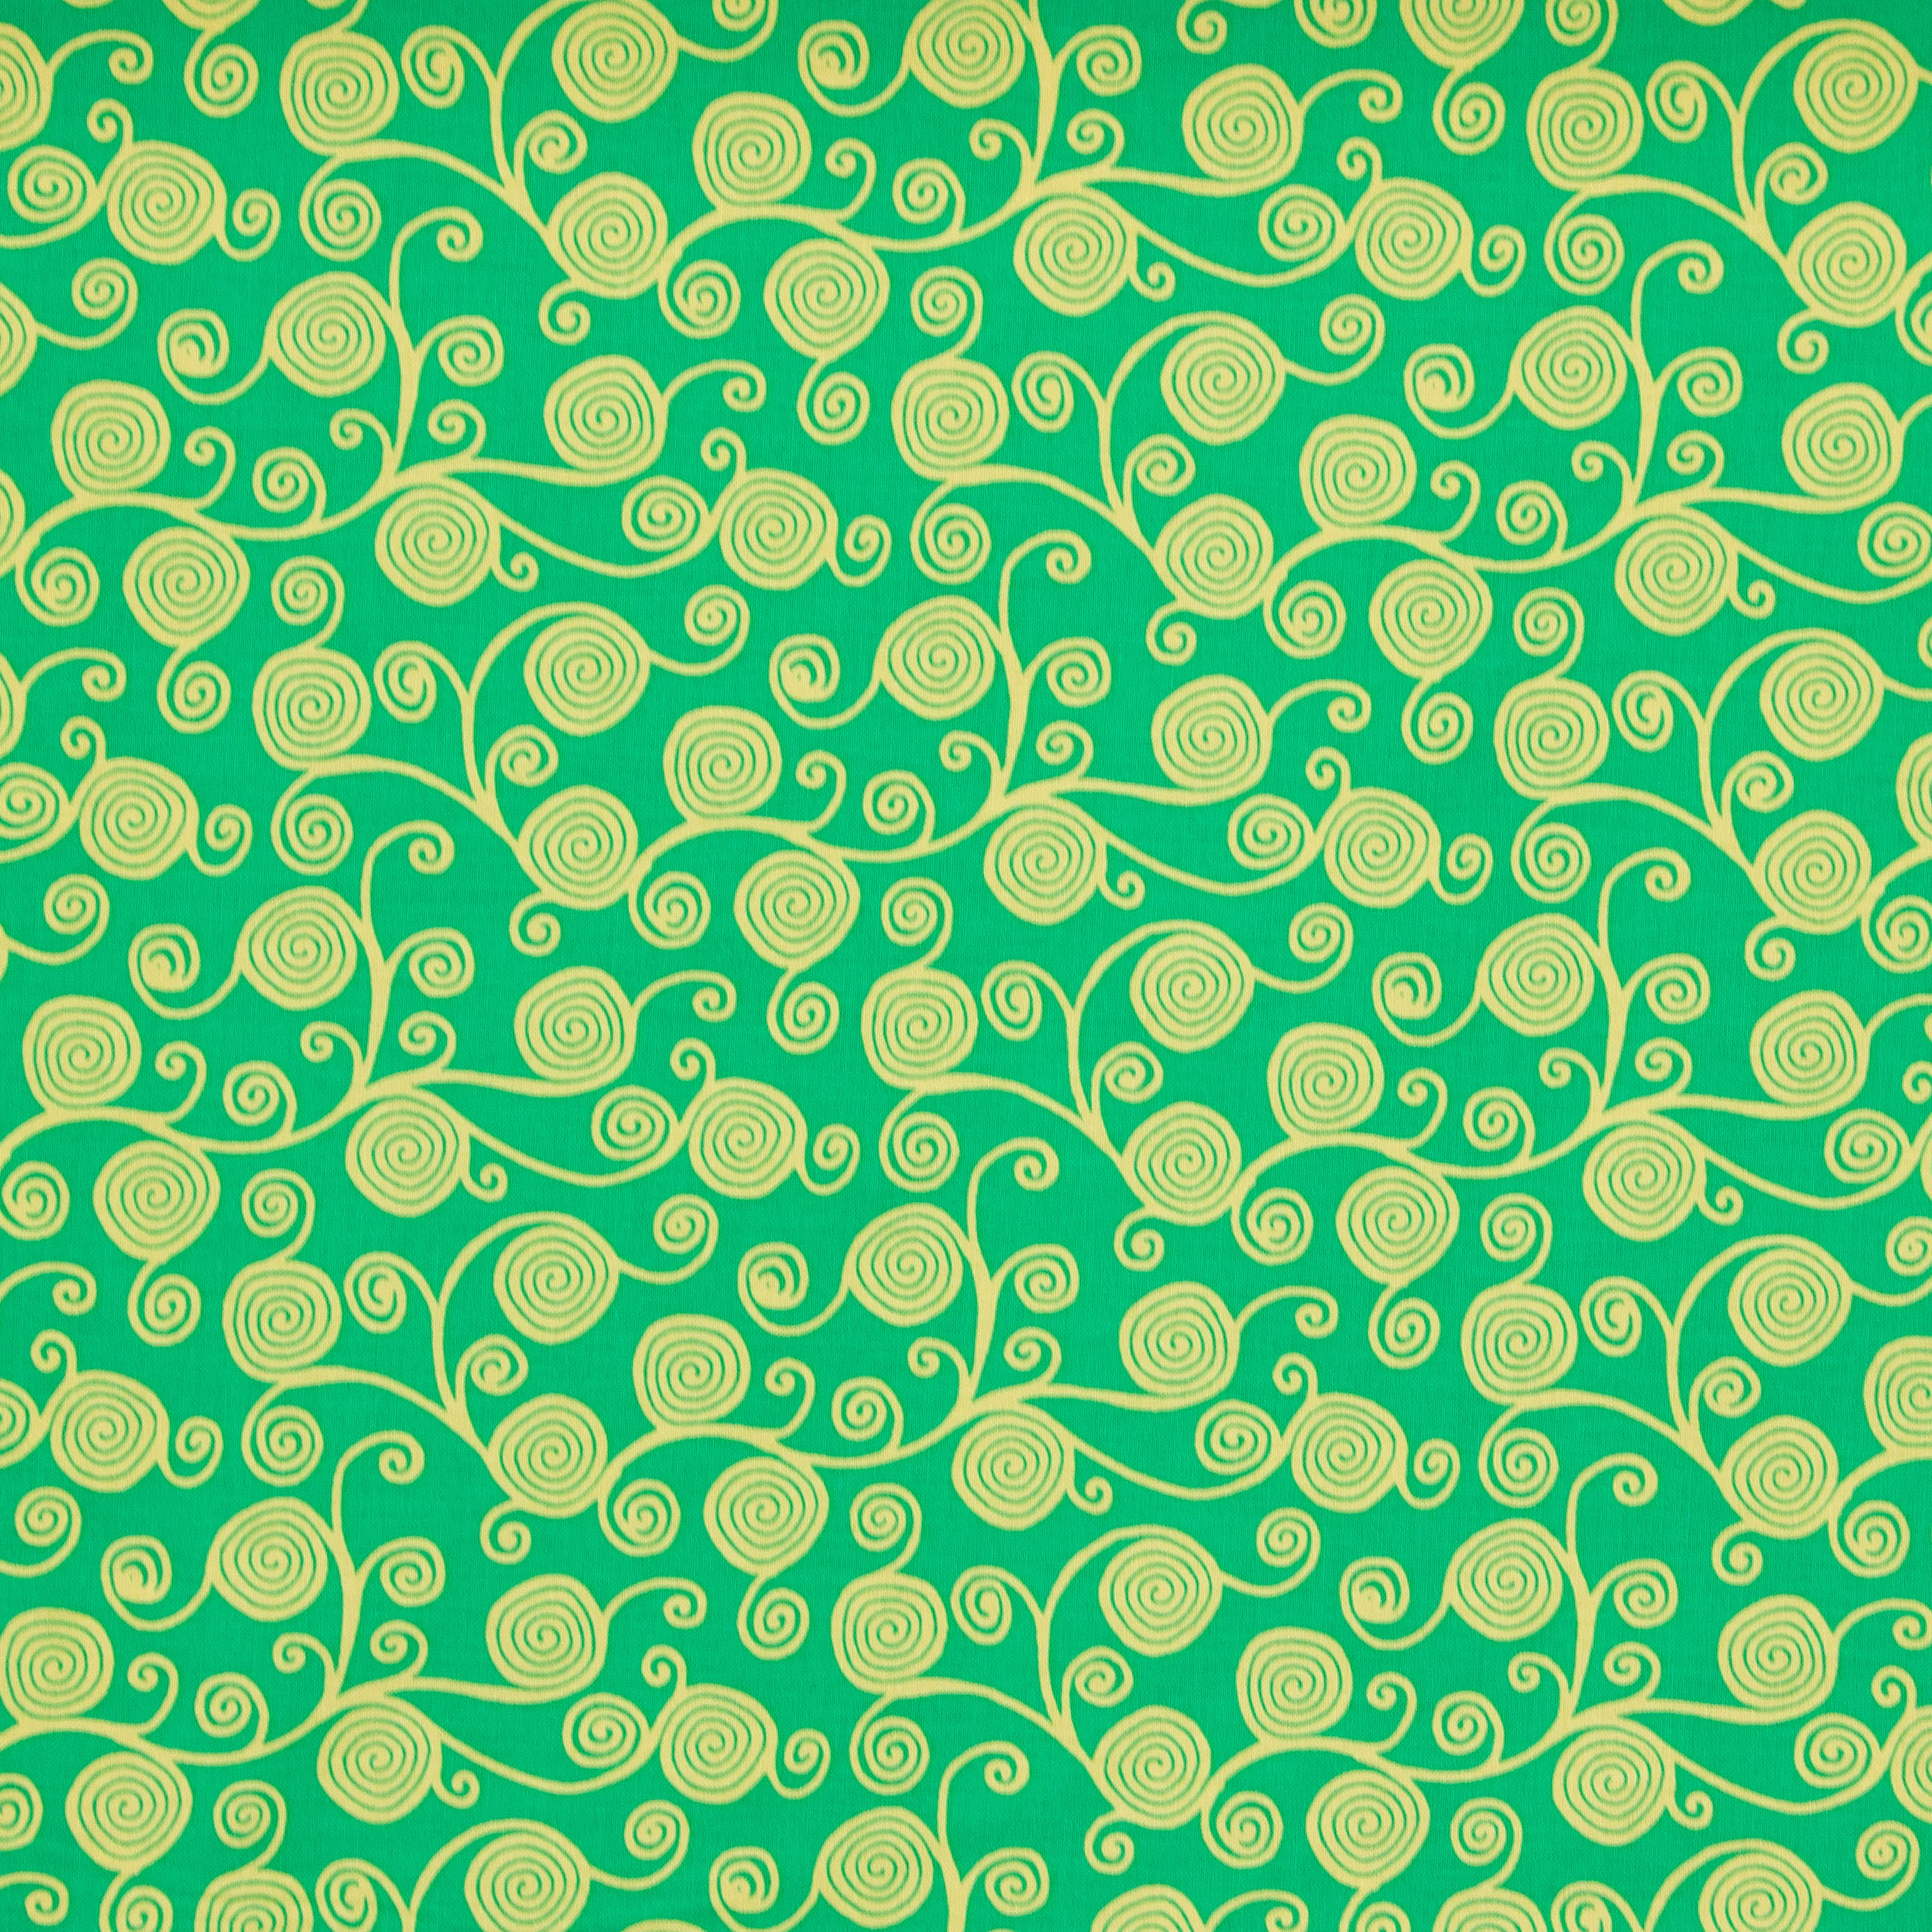 Katoen groen met sierlijke cirkels